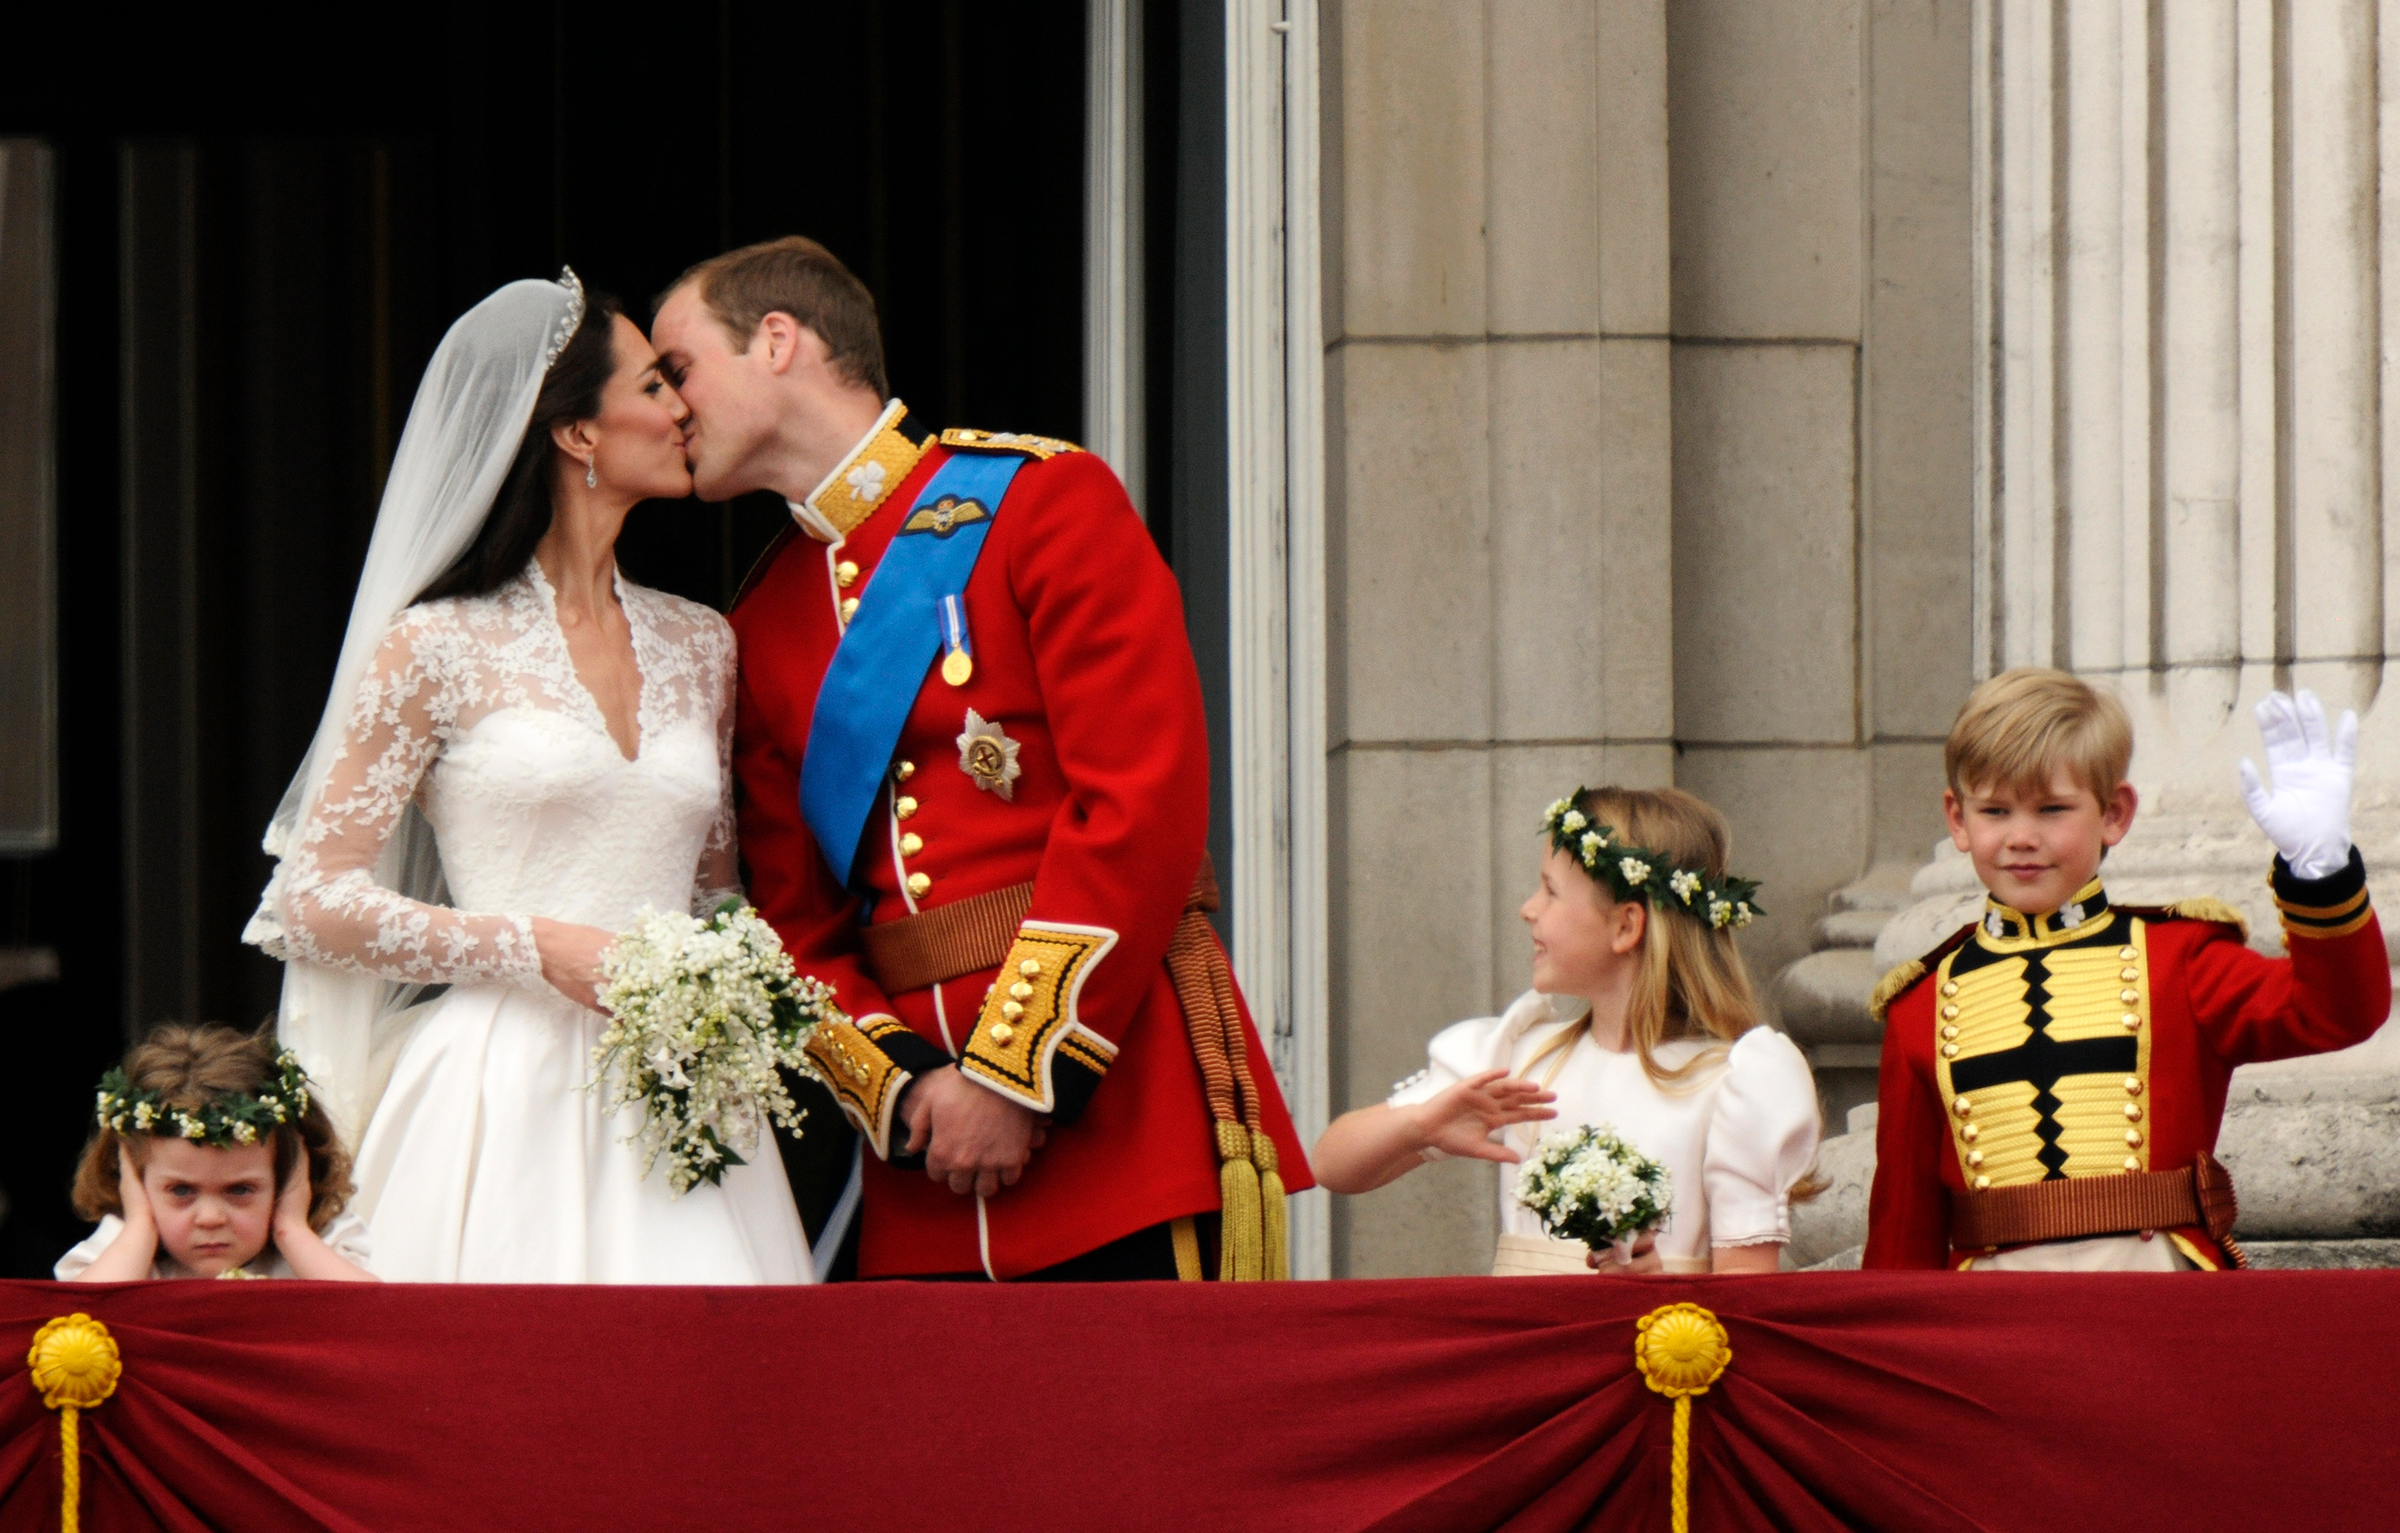 Свадьба принца Уильяма и Кейт Миддлтон в 2011 году обошлась, по оценке СМИ, в &pound;20 млн (около $34 млн по курсу того времени), сегодня эта сумма составила&nbsp;бы около &pound;22 млн ($28 млн). Около 94% стоимости церемонии пришлось на обеспечение безопасности. Прямую трансляцию церемонию в Youtube смотрели&nbsp;72 млн человек.
